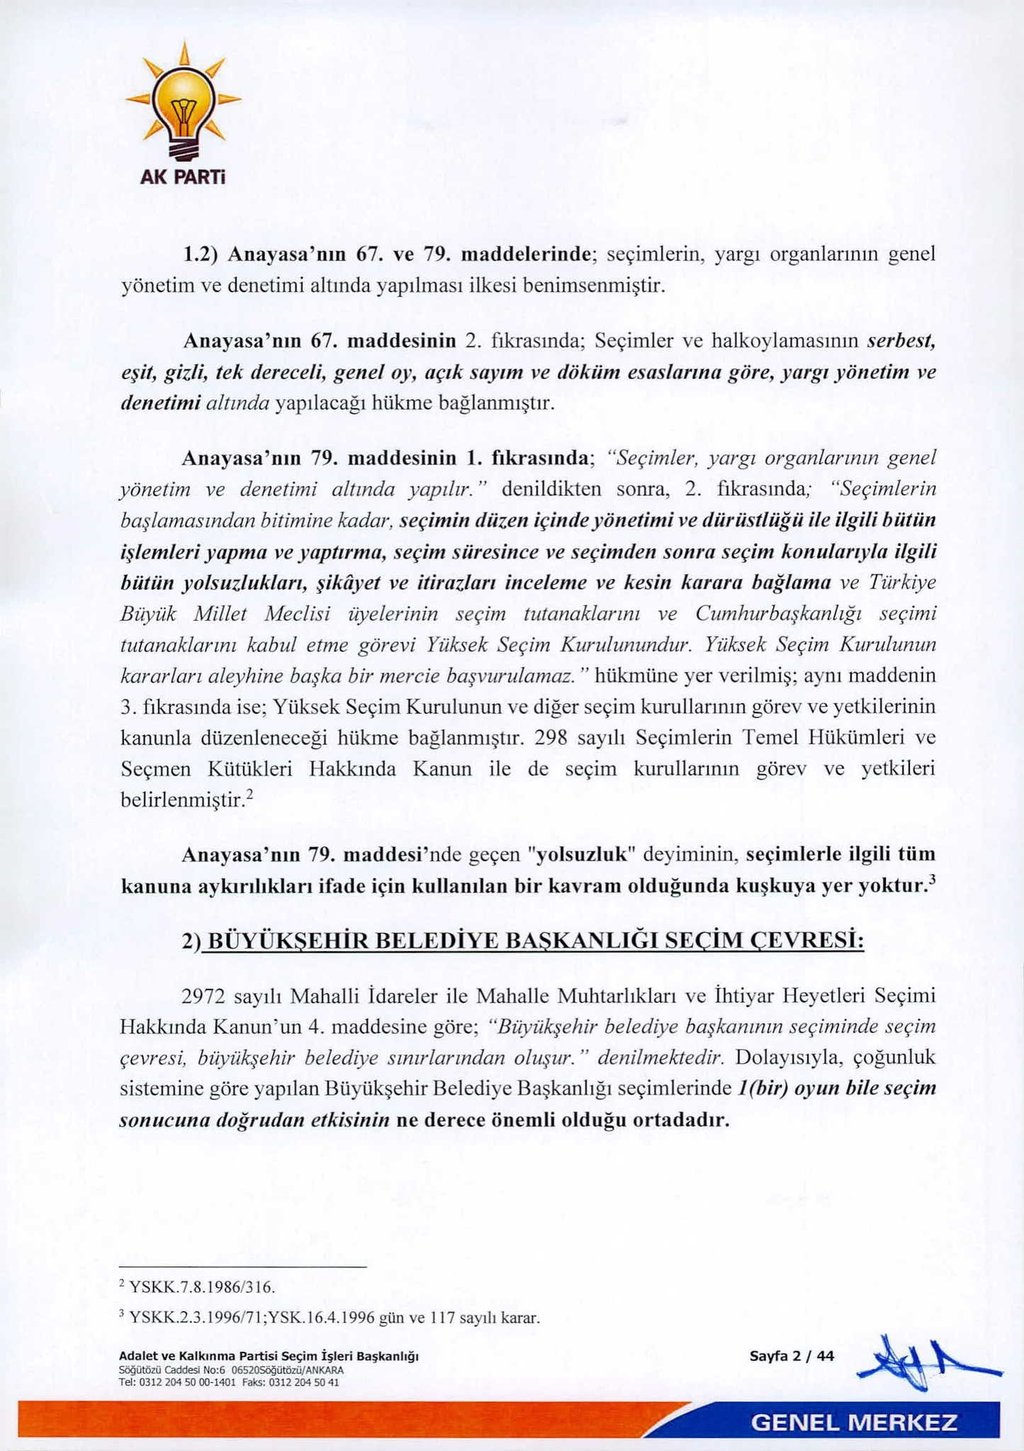 AK Parti’nin itirazlarının dayanakları ve sandıktaki usulsüzlüğün detayları...